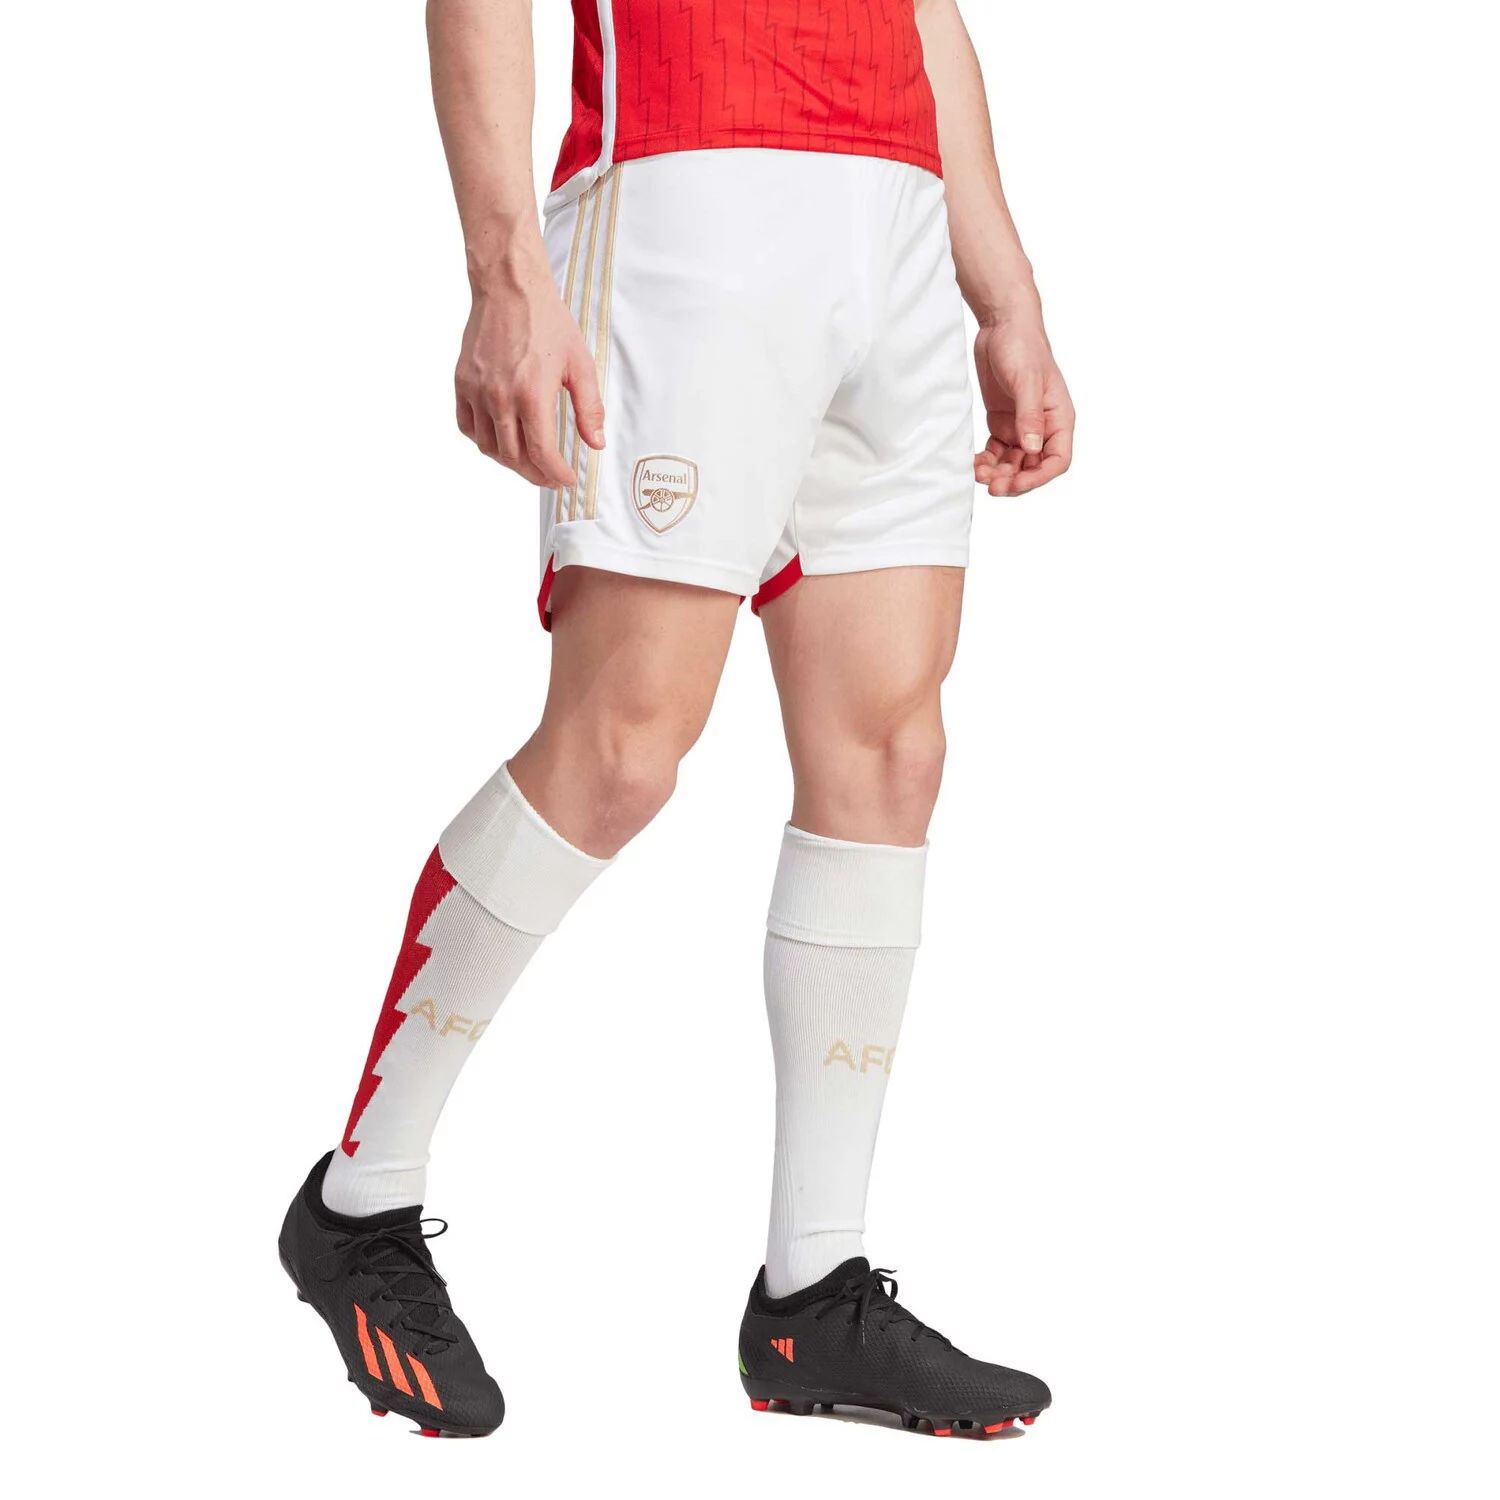 Мужские белые тренировочные шорты Arsenal adidas